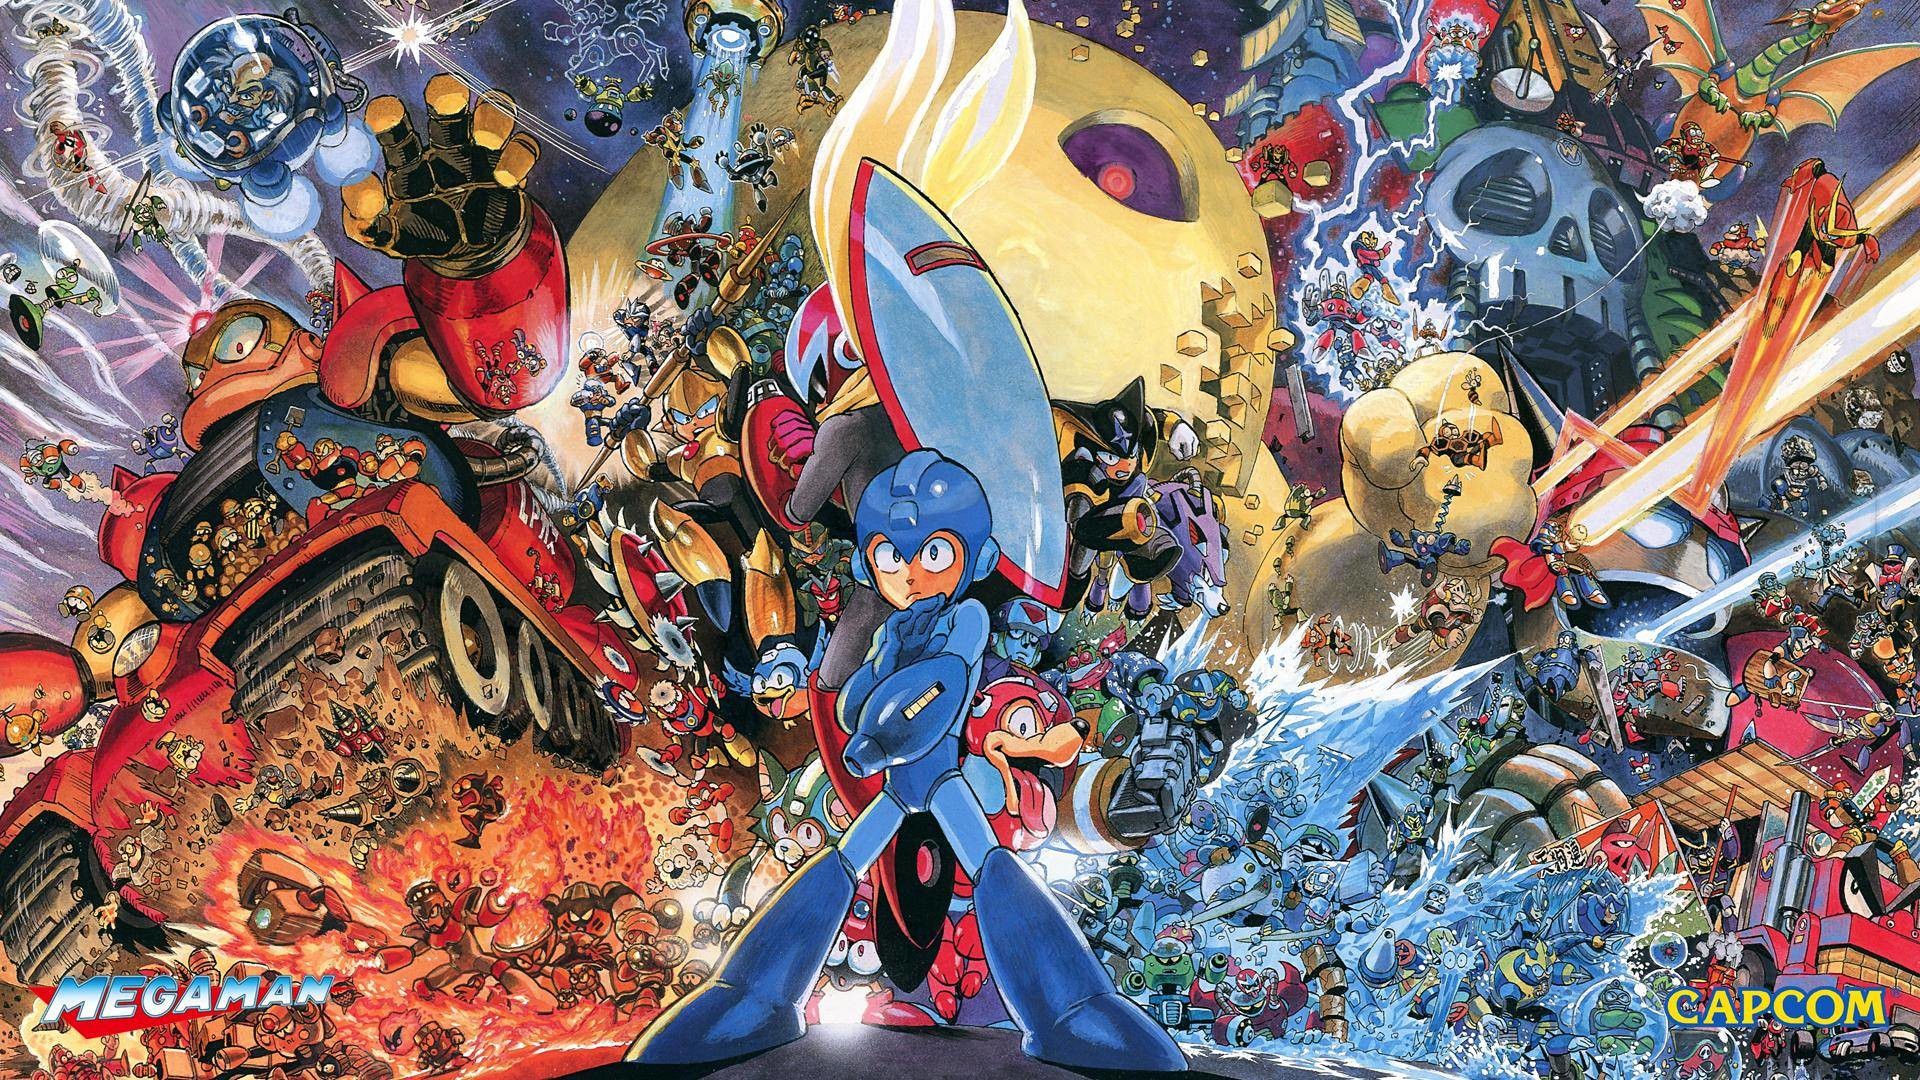 Mm Heroes Of Capcom Wallpaper - Yusuke Murata Megaman , HD Wallpaper & Backgrounds